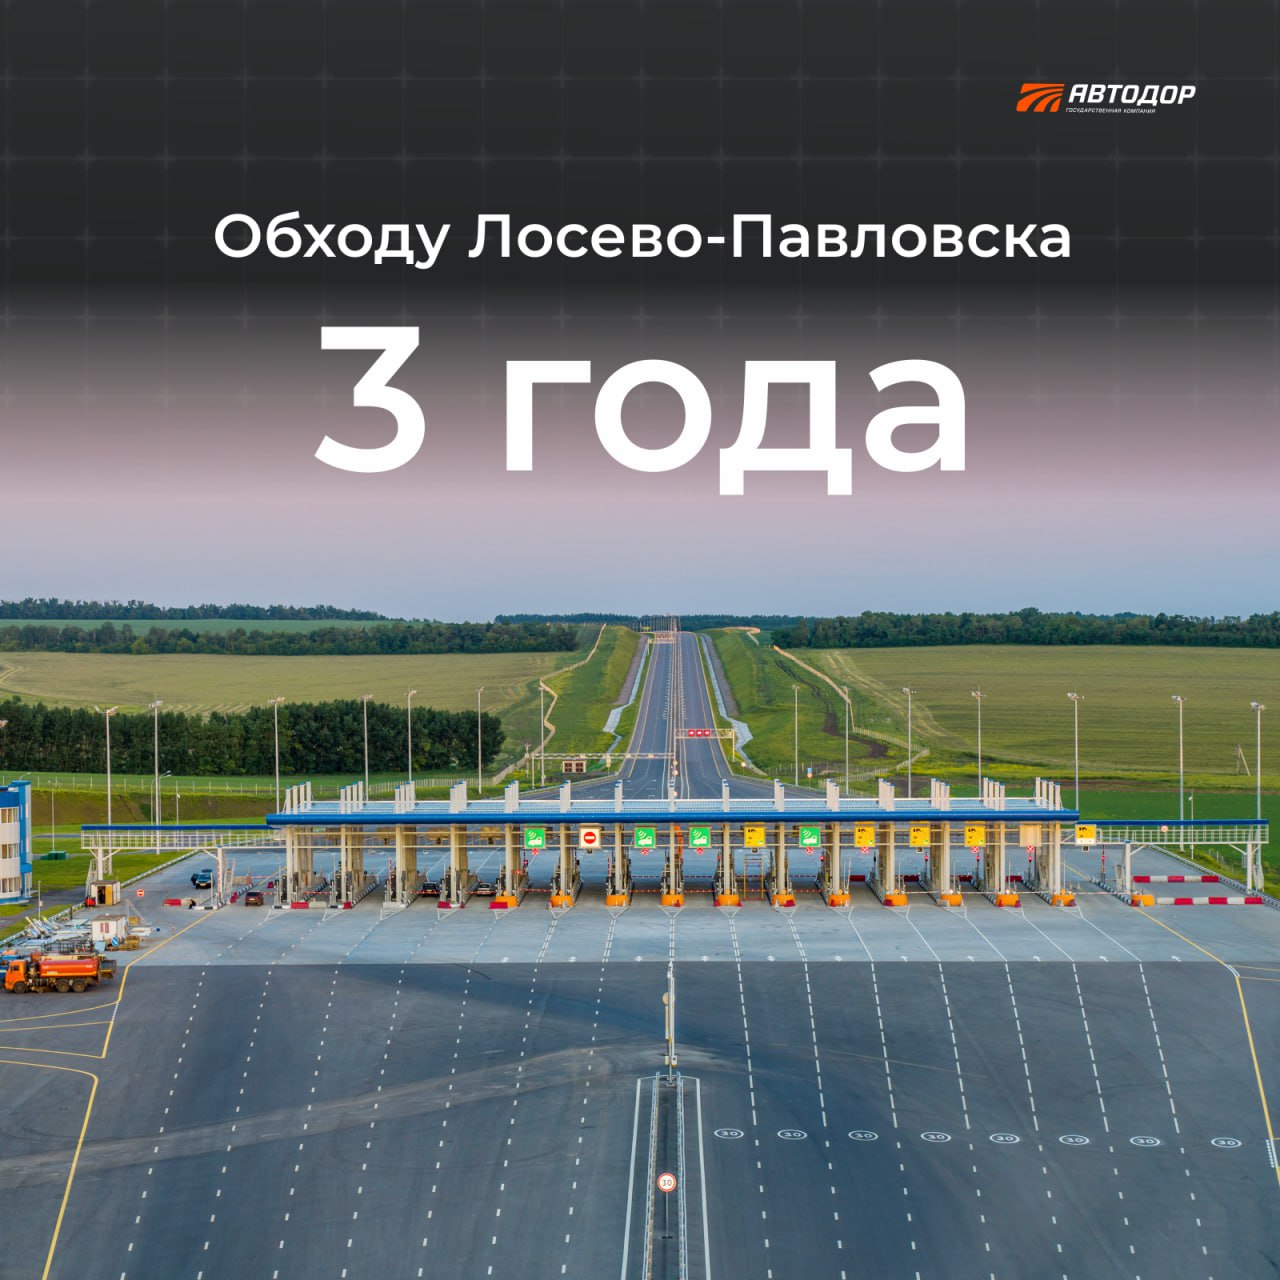 Более 17 млн раз проехали автомобилисты по обходу Лосева и Павловска на М-4 «Дон» за три годаРовно три года назад, 4 июля 202...